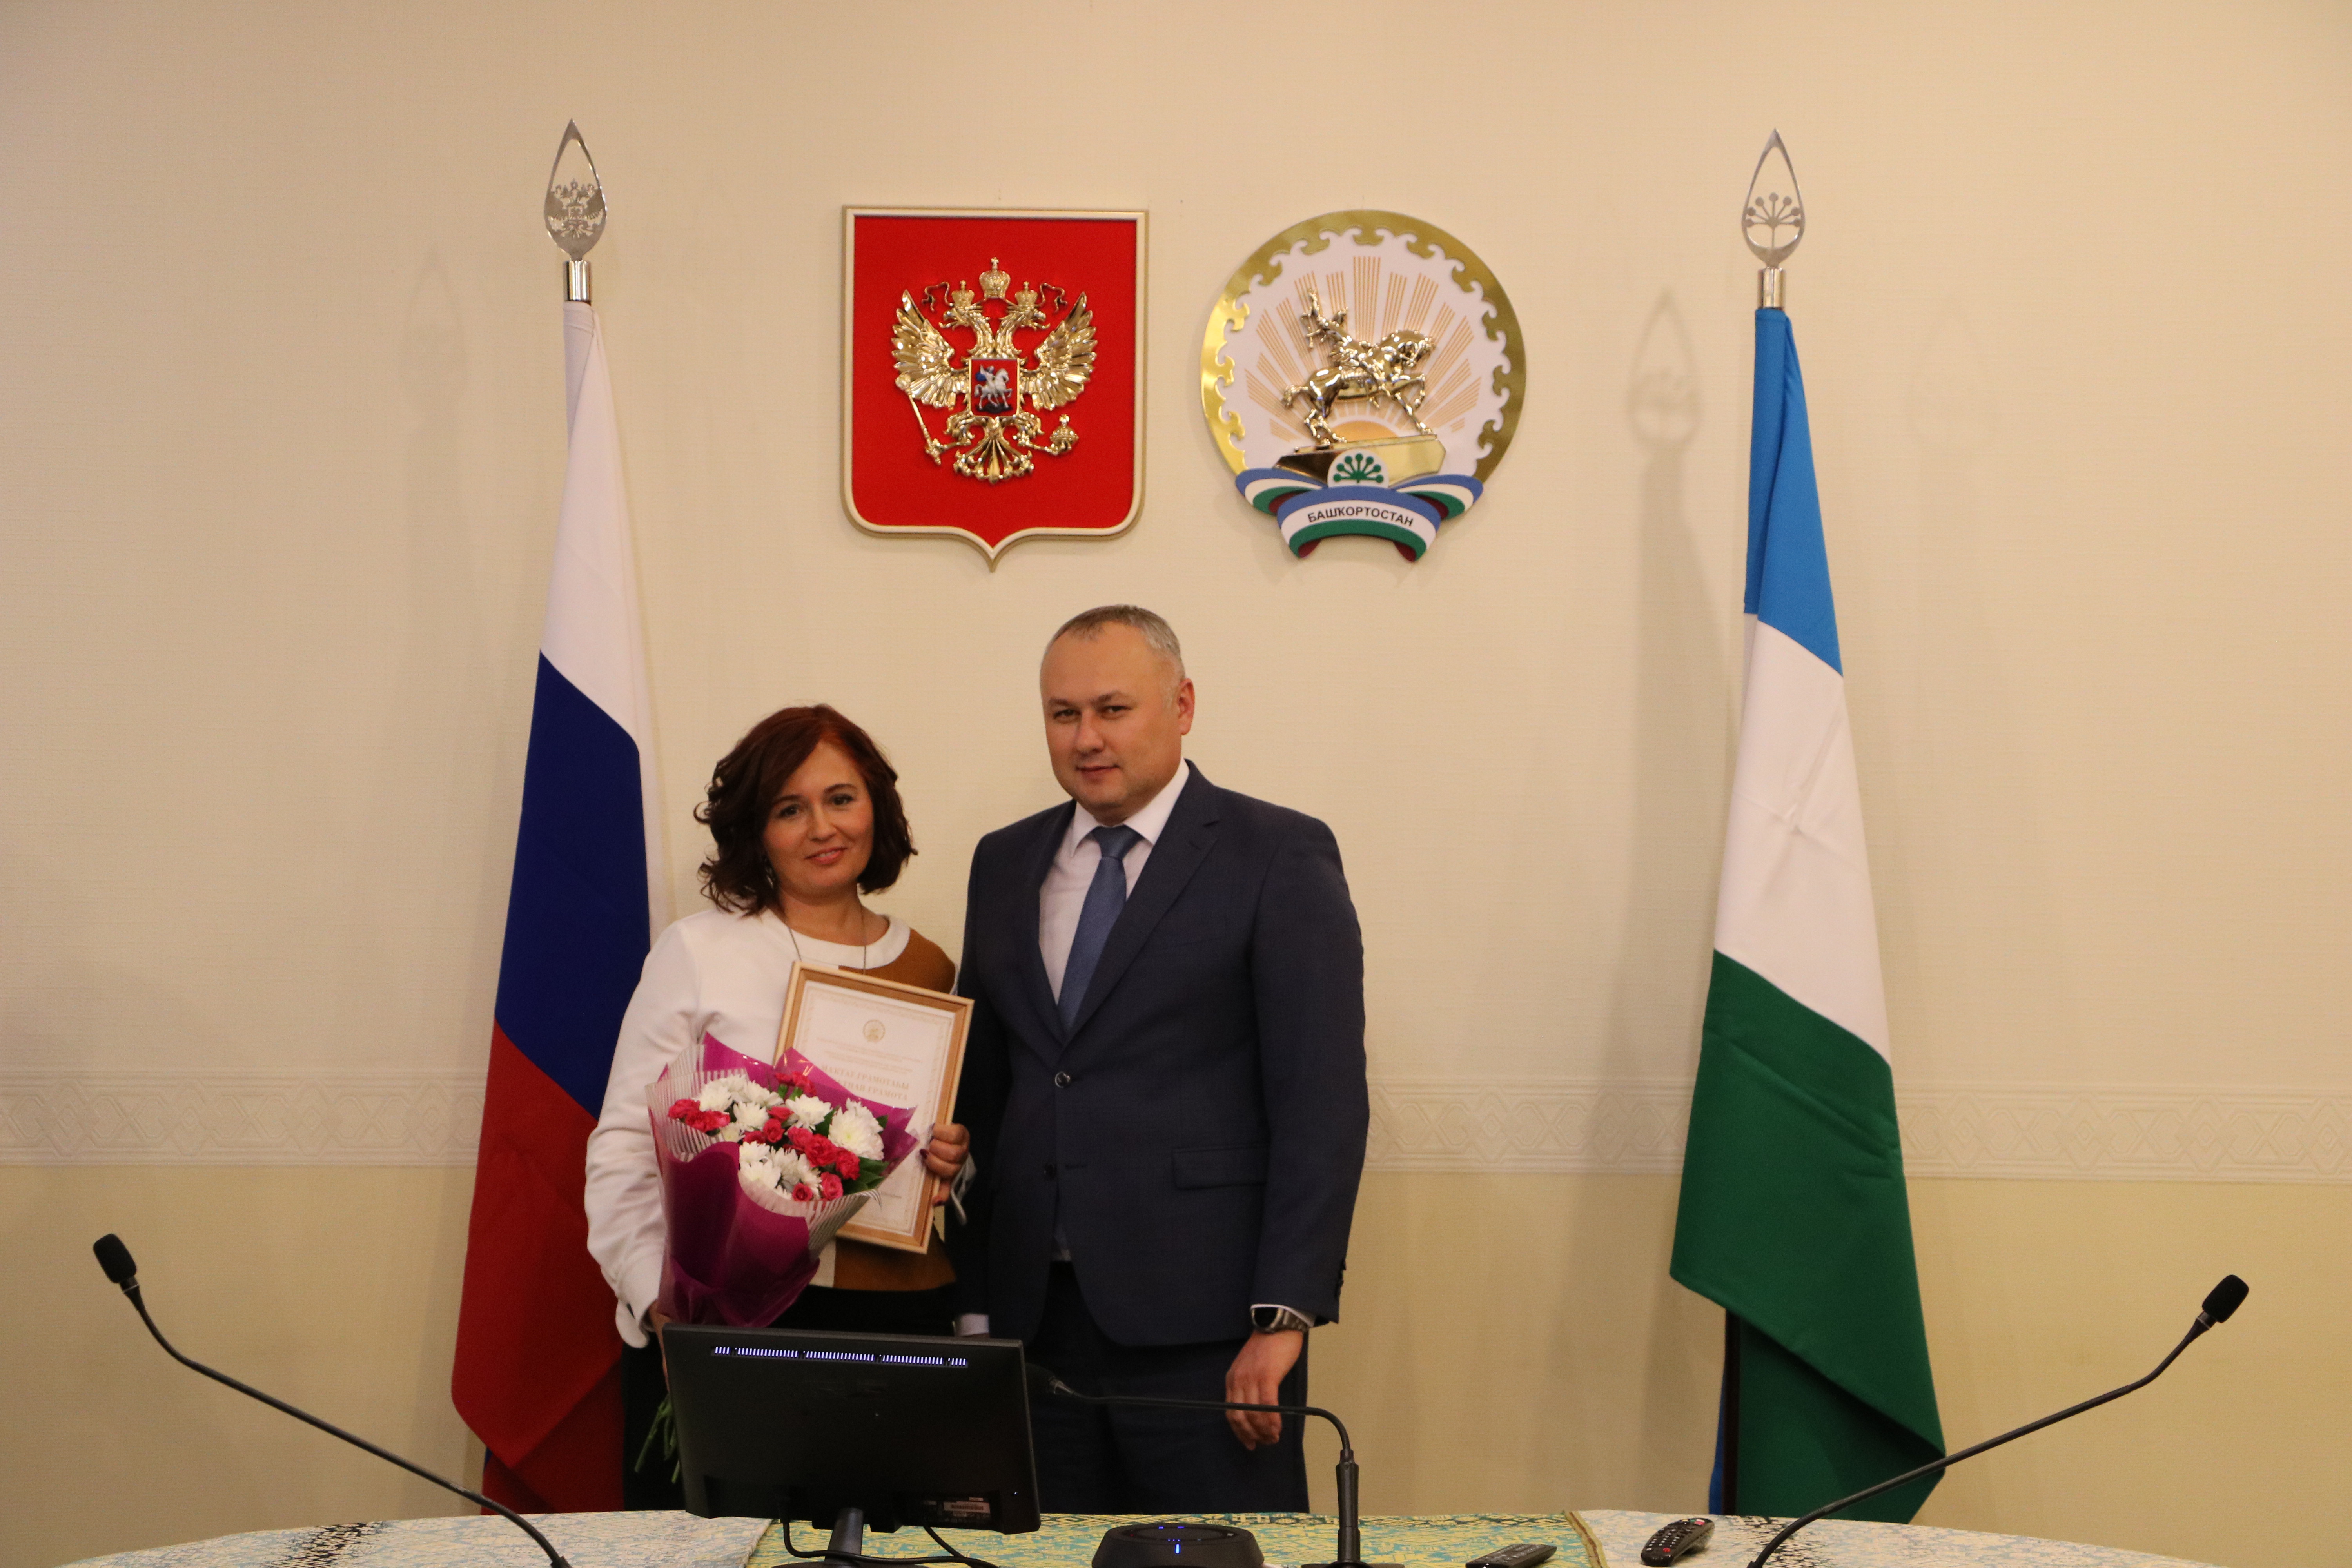 Специалисты ЦСМ Республики Башкортостан награждены Почетными грамотами Министерства промышленности, энергетики и инноваций